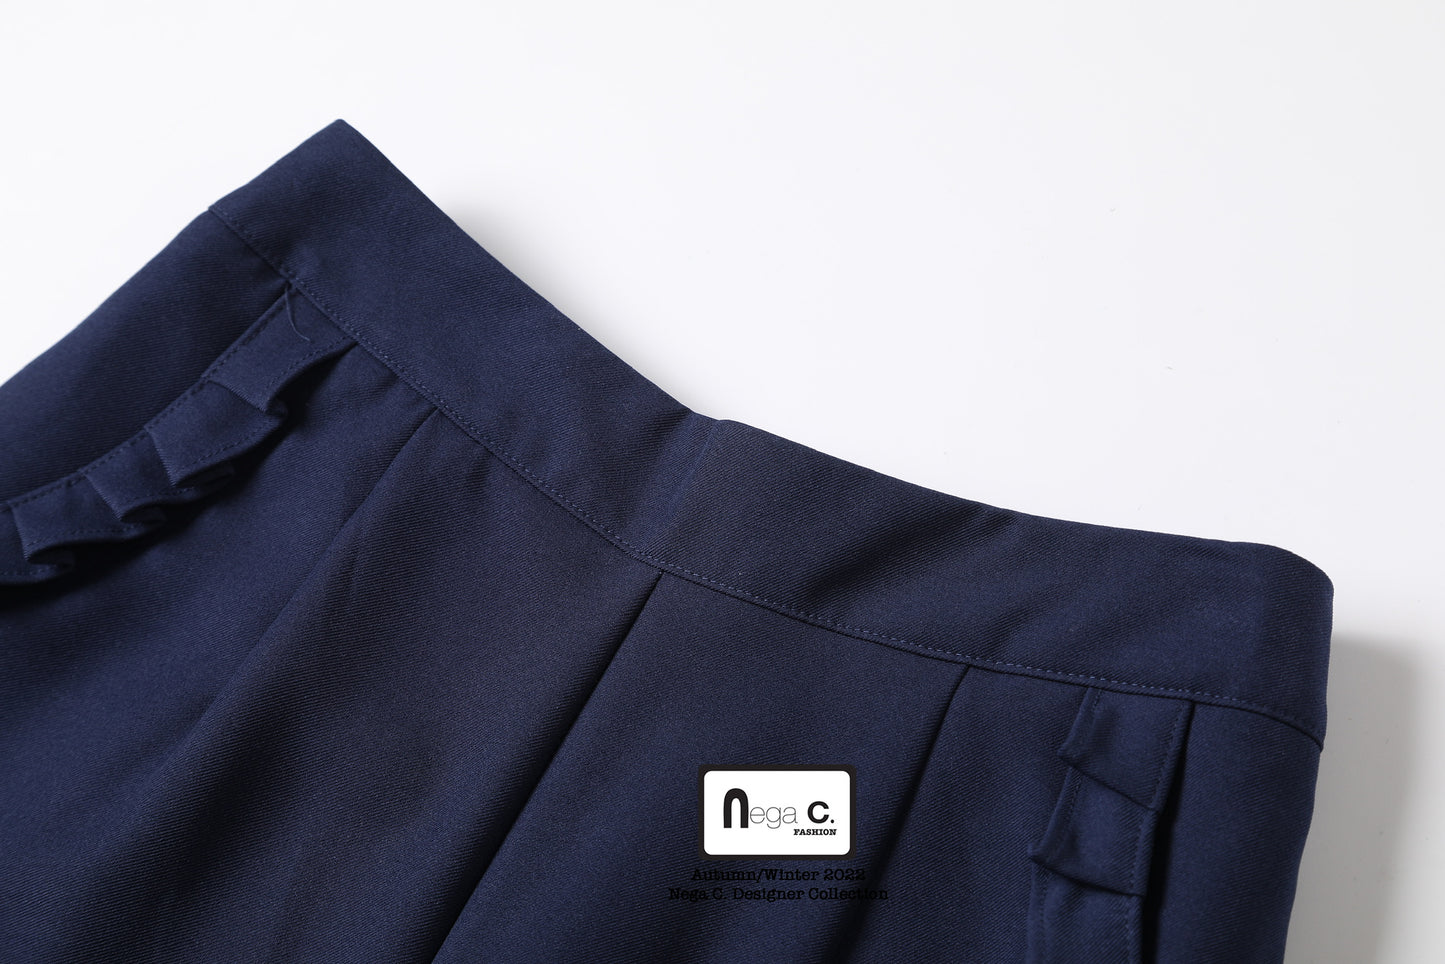 Nega C. 純色荷葉邊闊版西褲| 深藍色| 無彈| 無裡襯